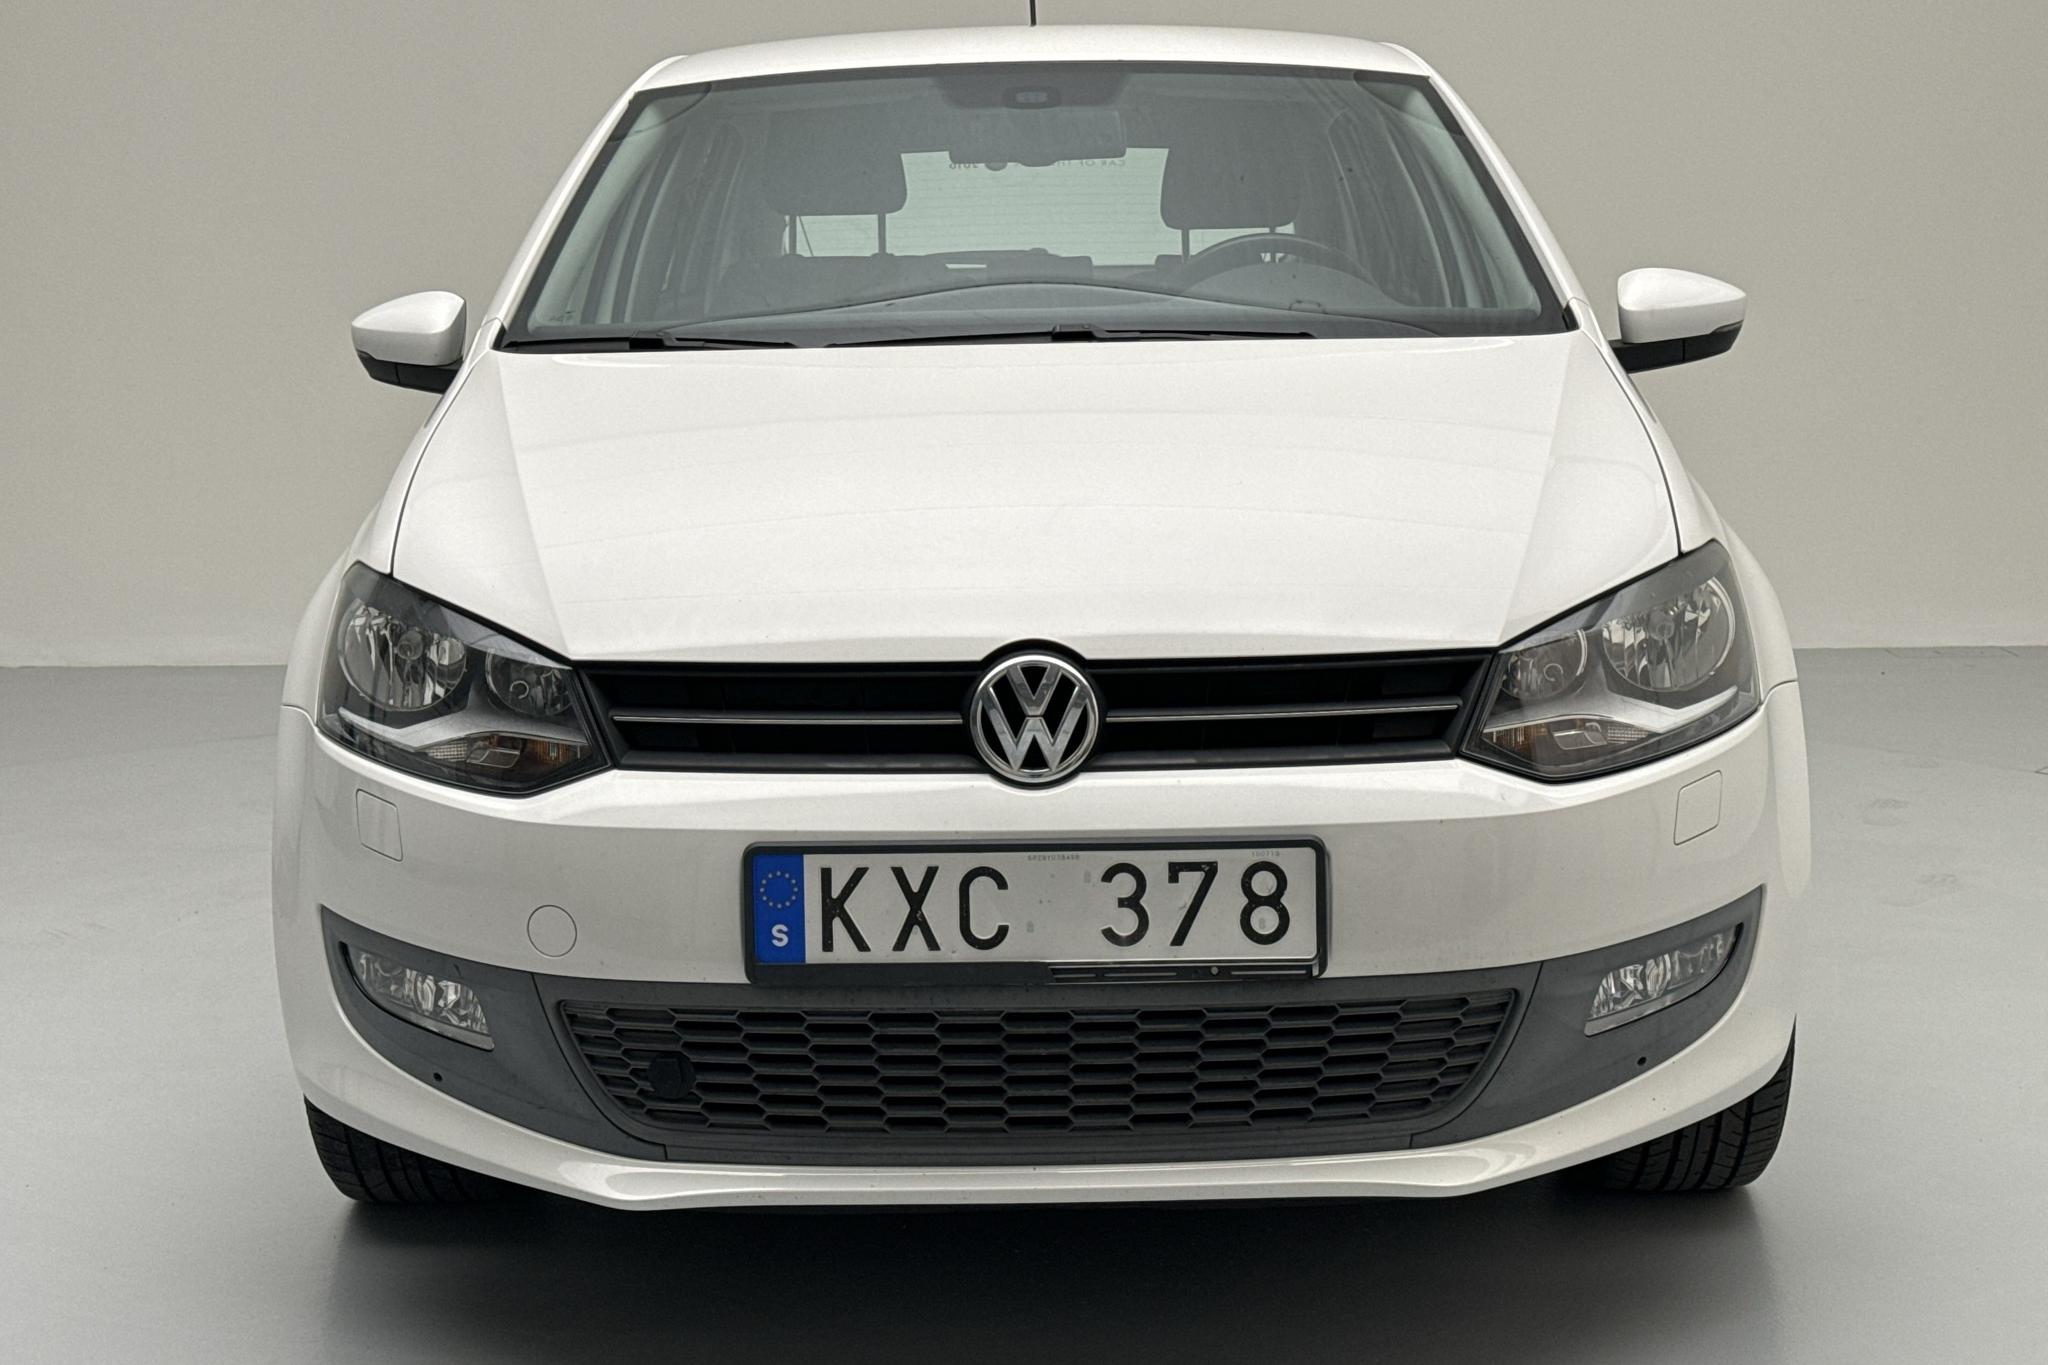 VW Polo 1.4 5dr (85hk) - 17 378 mil - Manuell - vit - 2011